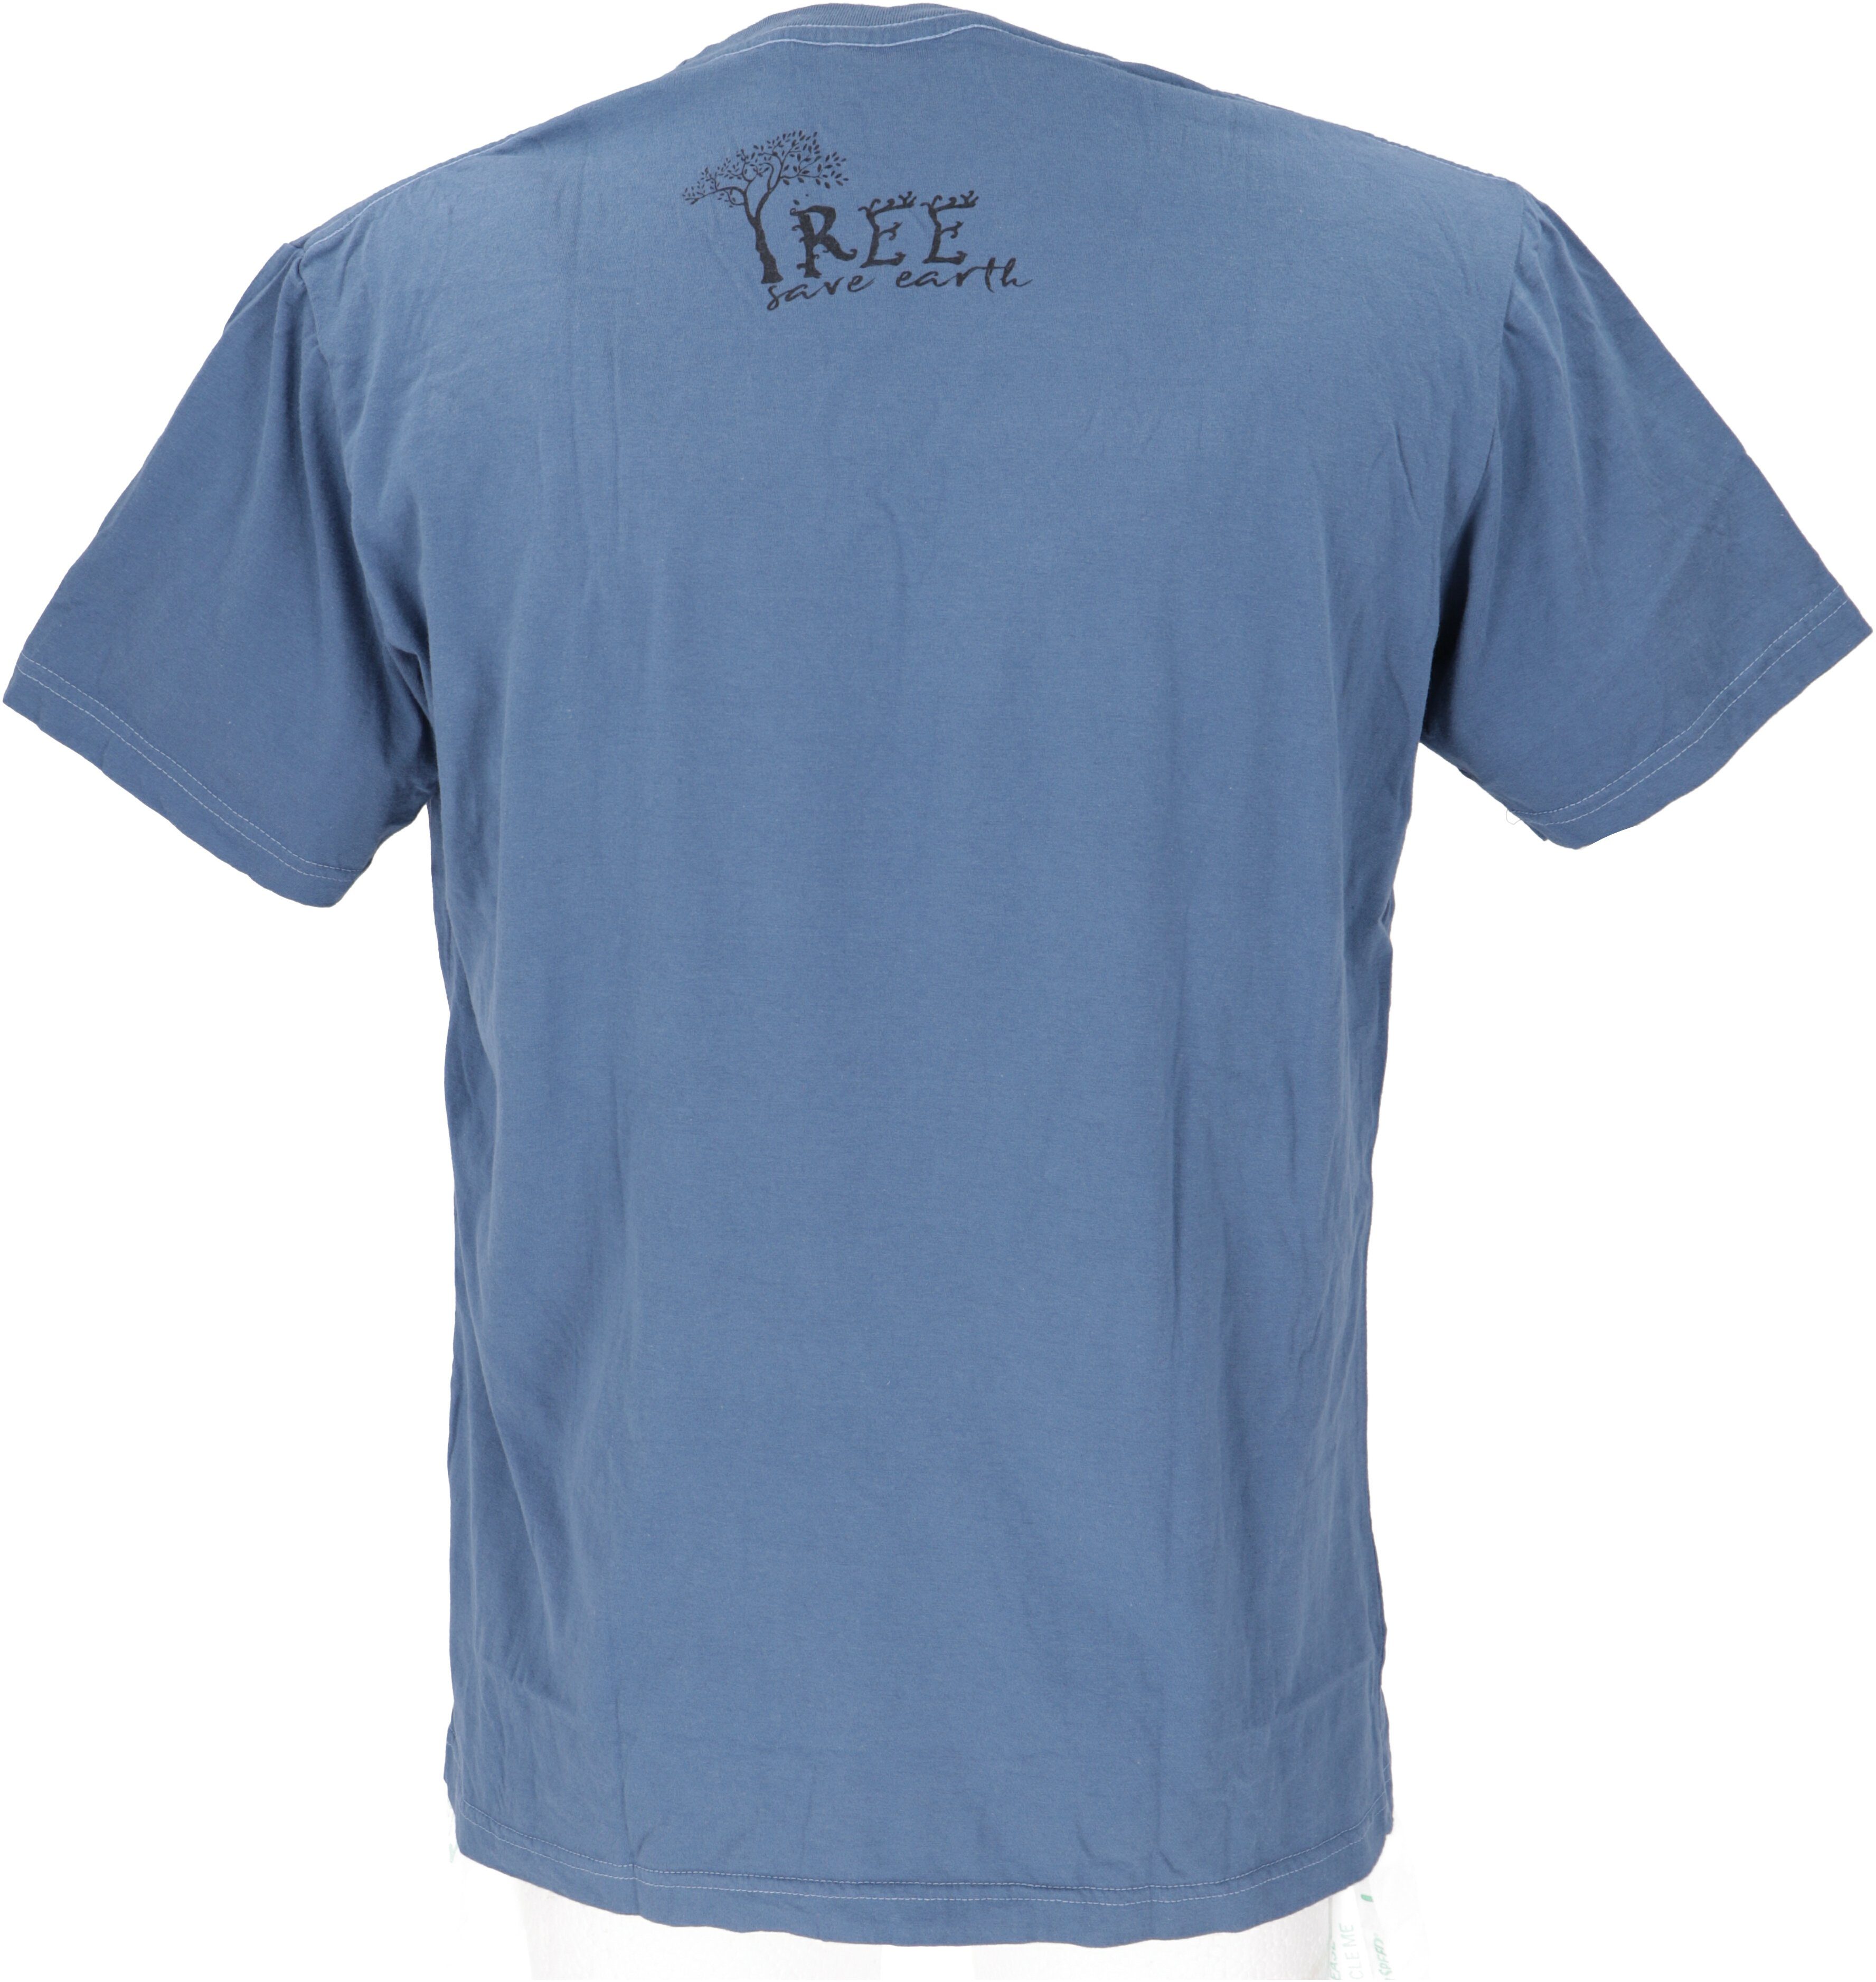 Guru-Shop T-Shirt Retro T-Shirt, earth T-Shirt Tree Ice/blau - save Retro